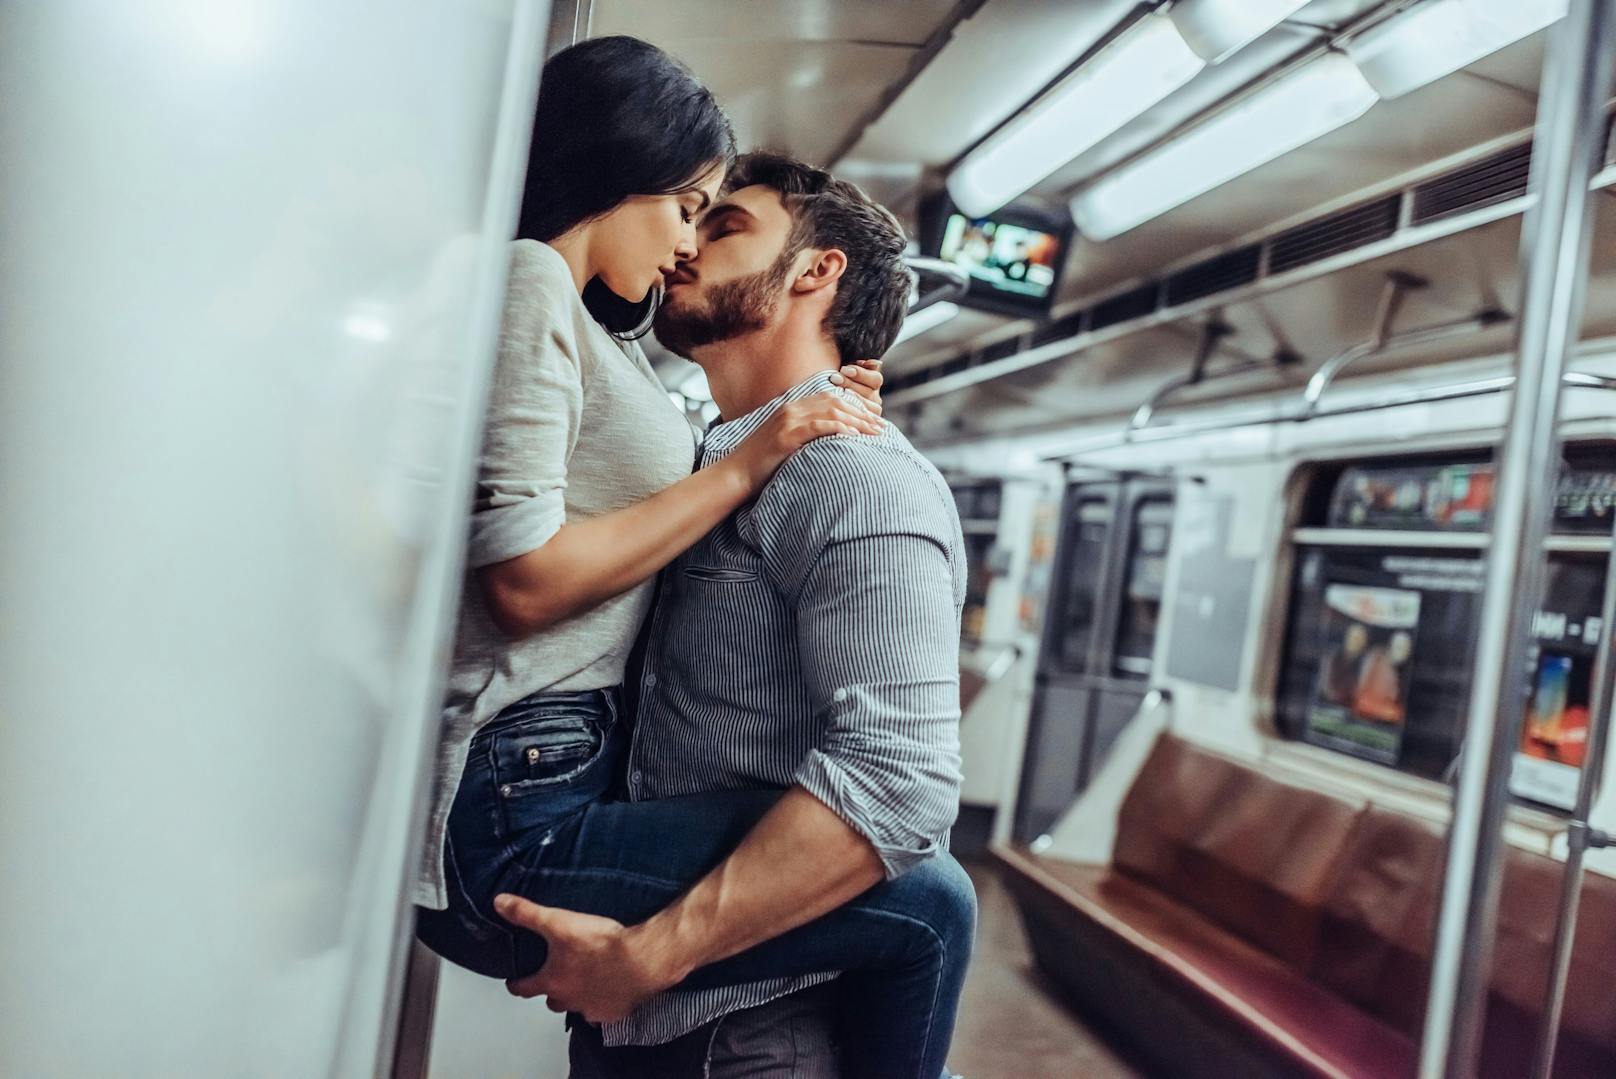 Pärchen hat im Zug Sex vor Fahrgästen, muss vor Gericht